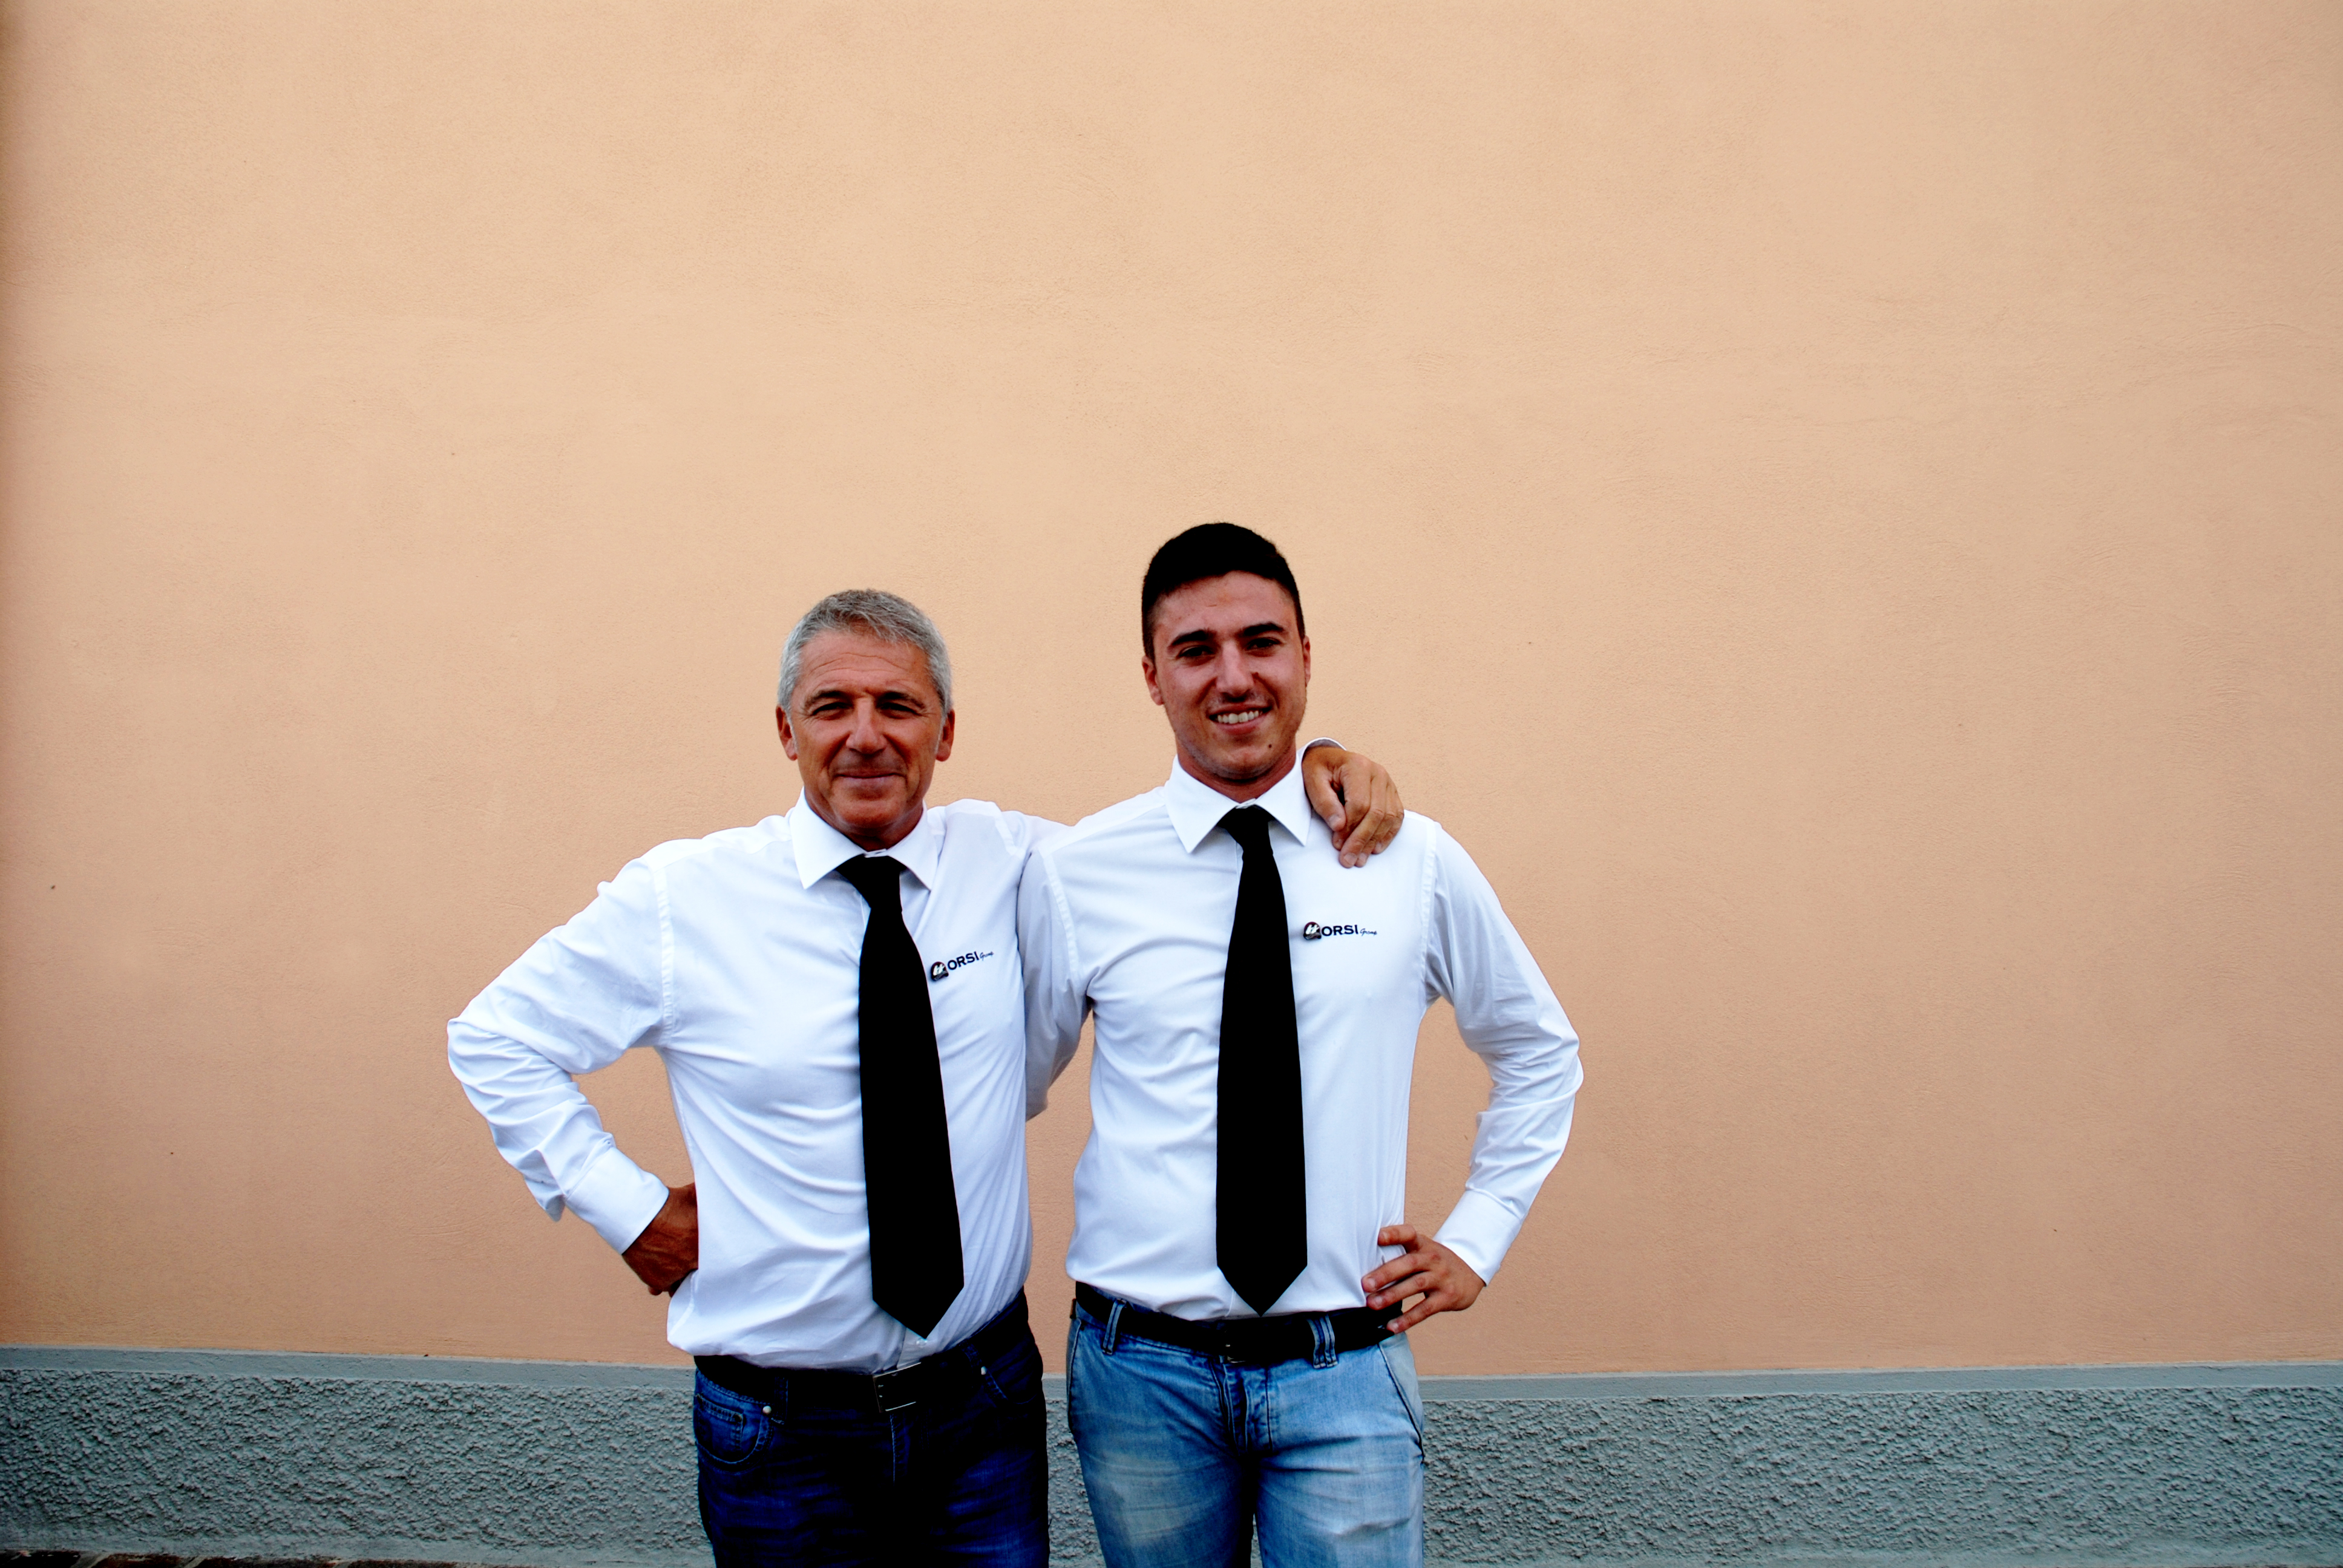 Stefano Orsi, a sinistra,
con il figlio Nicolò, a destra,
sono i titolari di orsi Group.